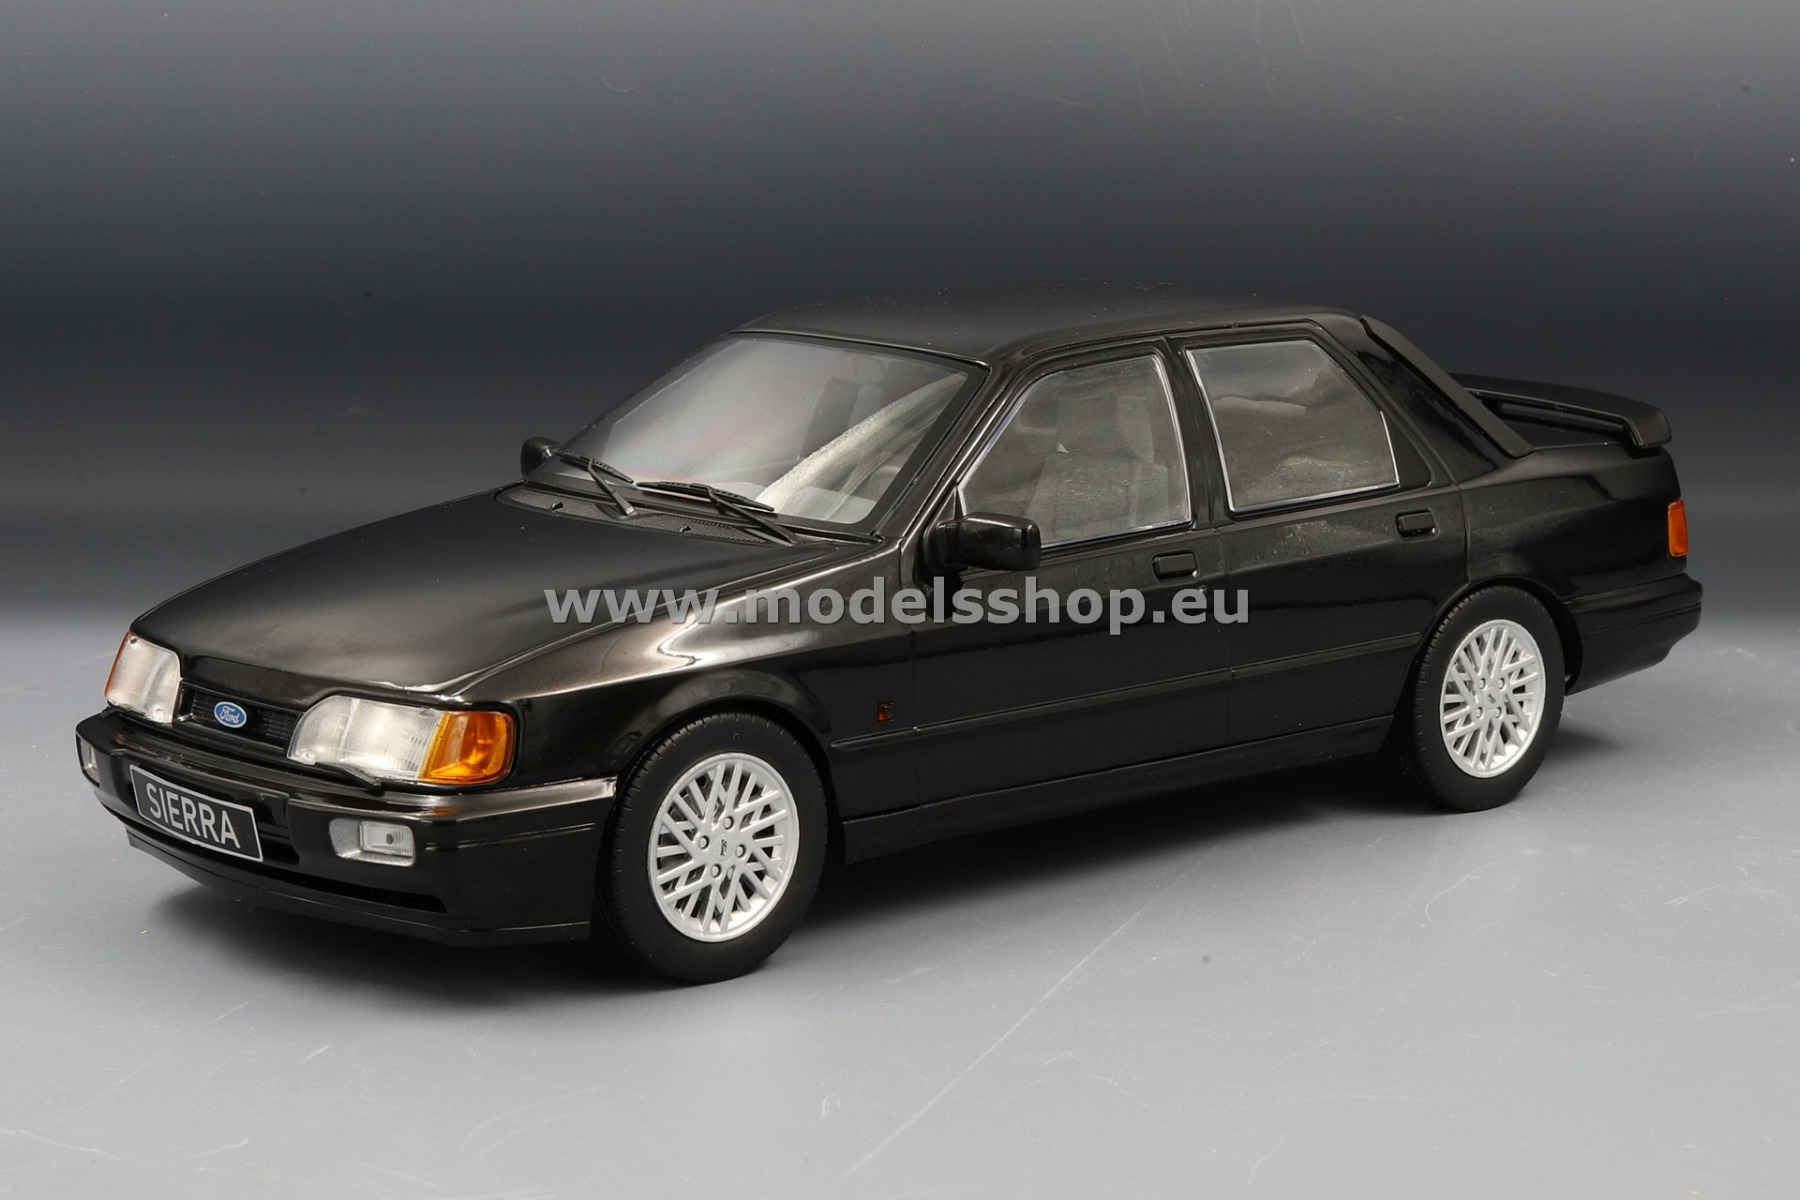 MCG 18173 Ford Sierra Cosworth, 1988 /black/